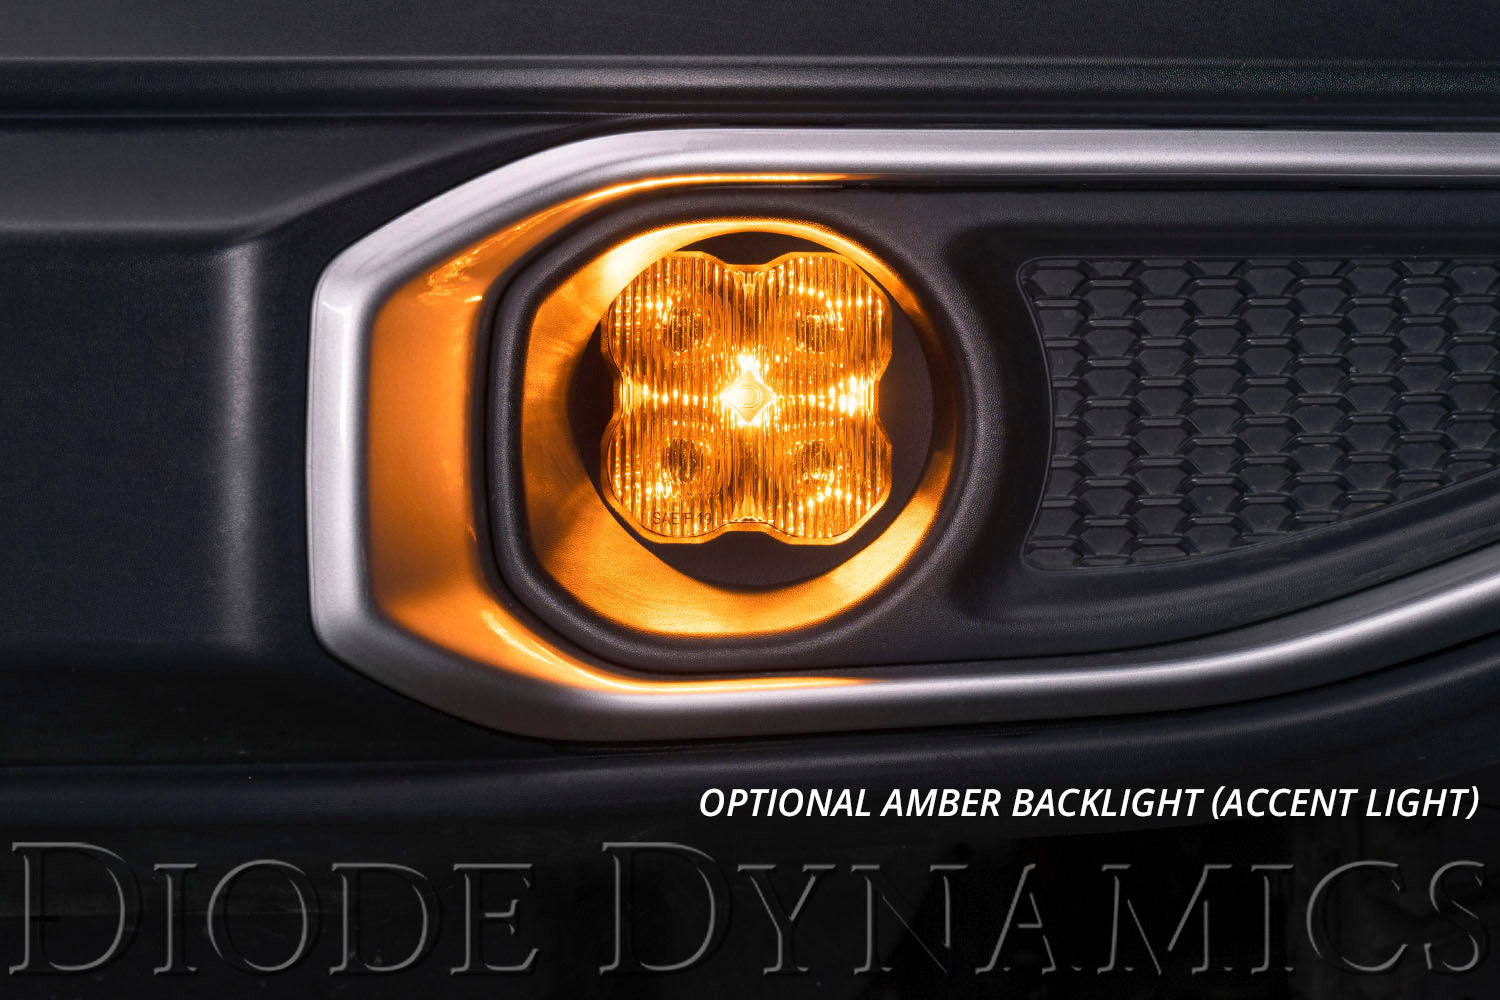 SS3 LED Fog Light Kit for 2011-2013 Lexus IS250 White SAE/DOT Driving Sport Diode Dynamics